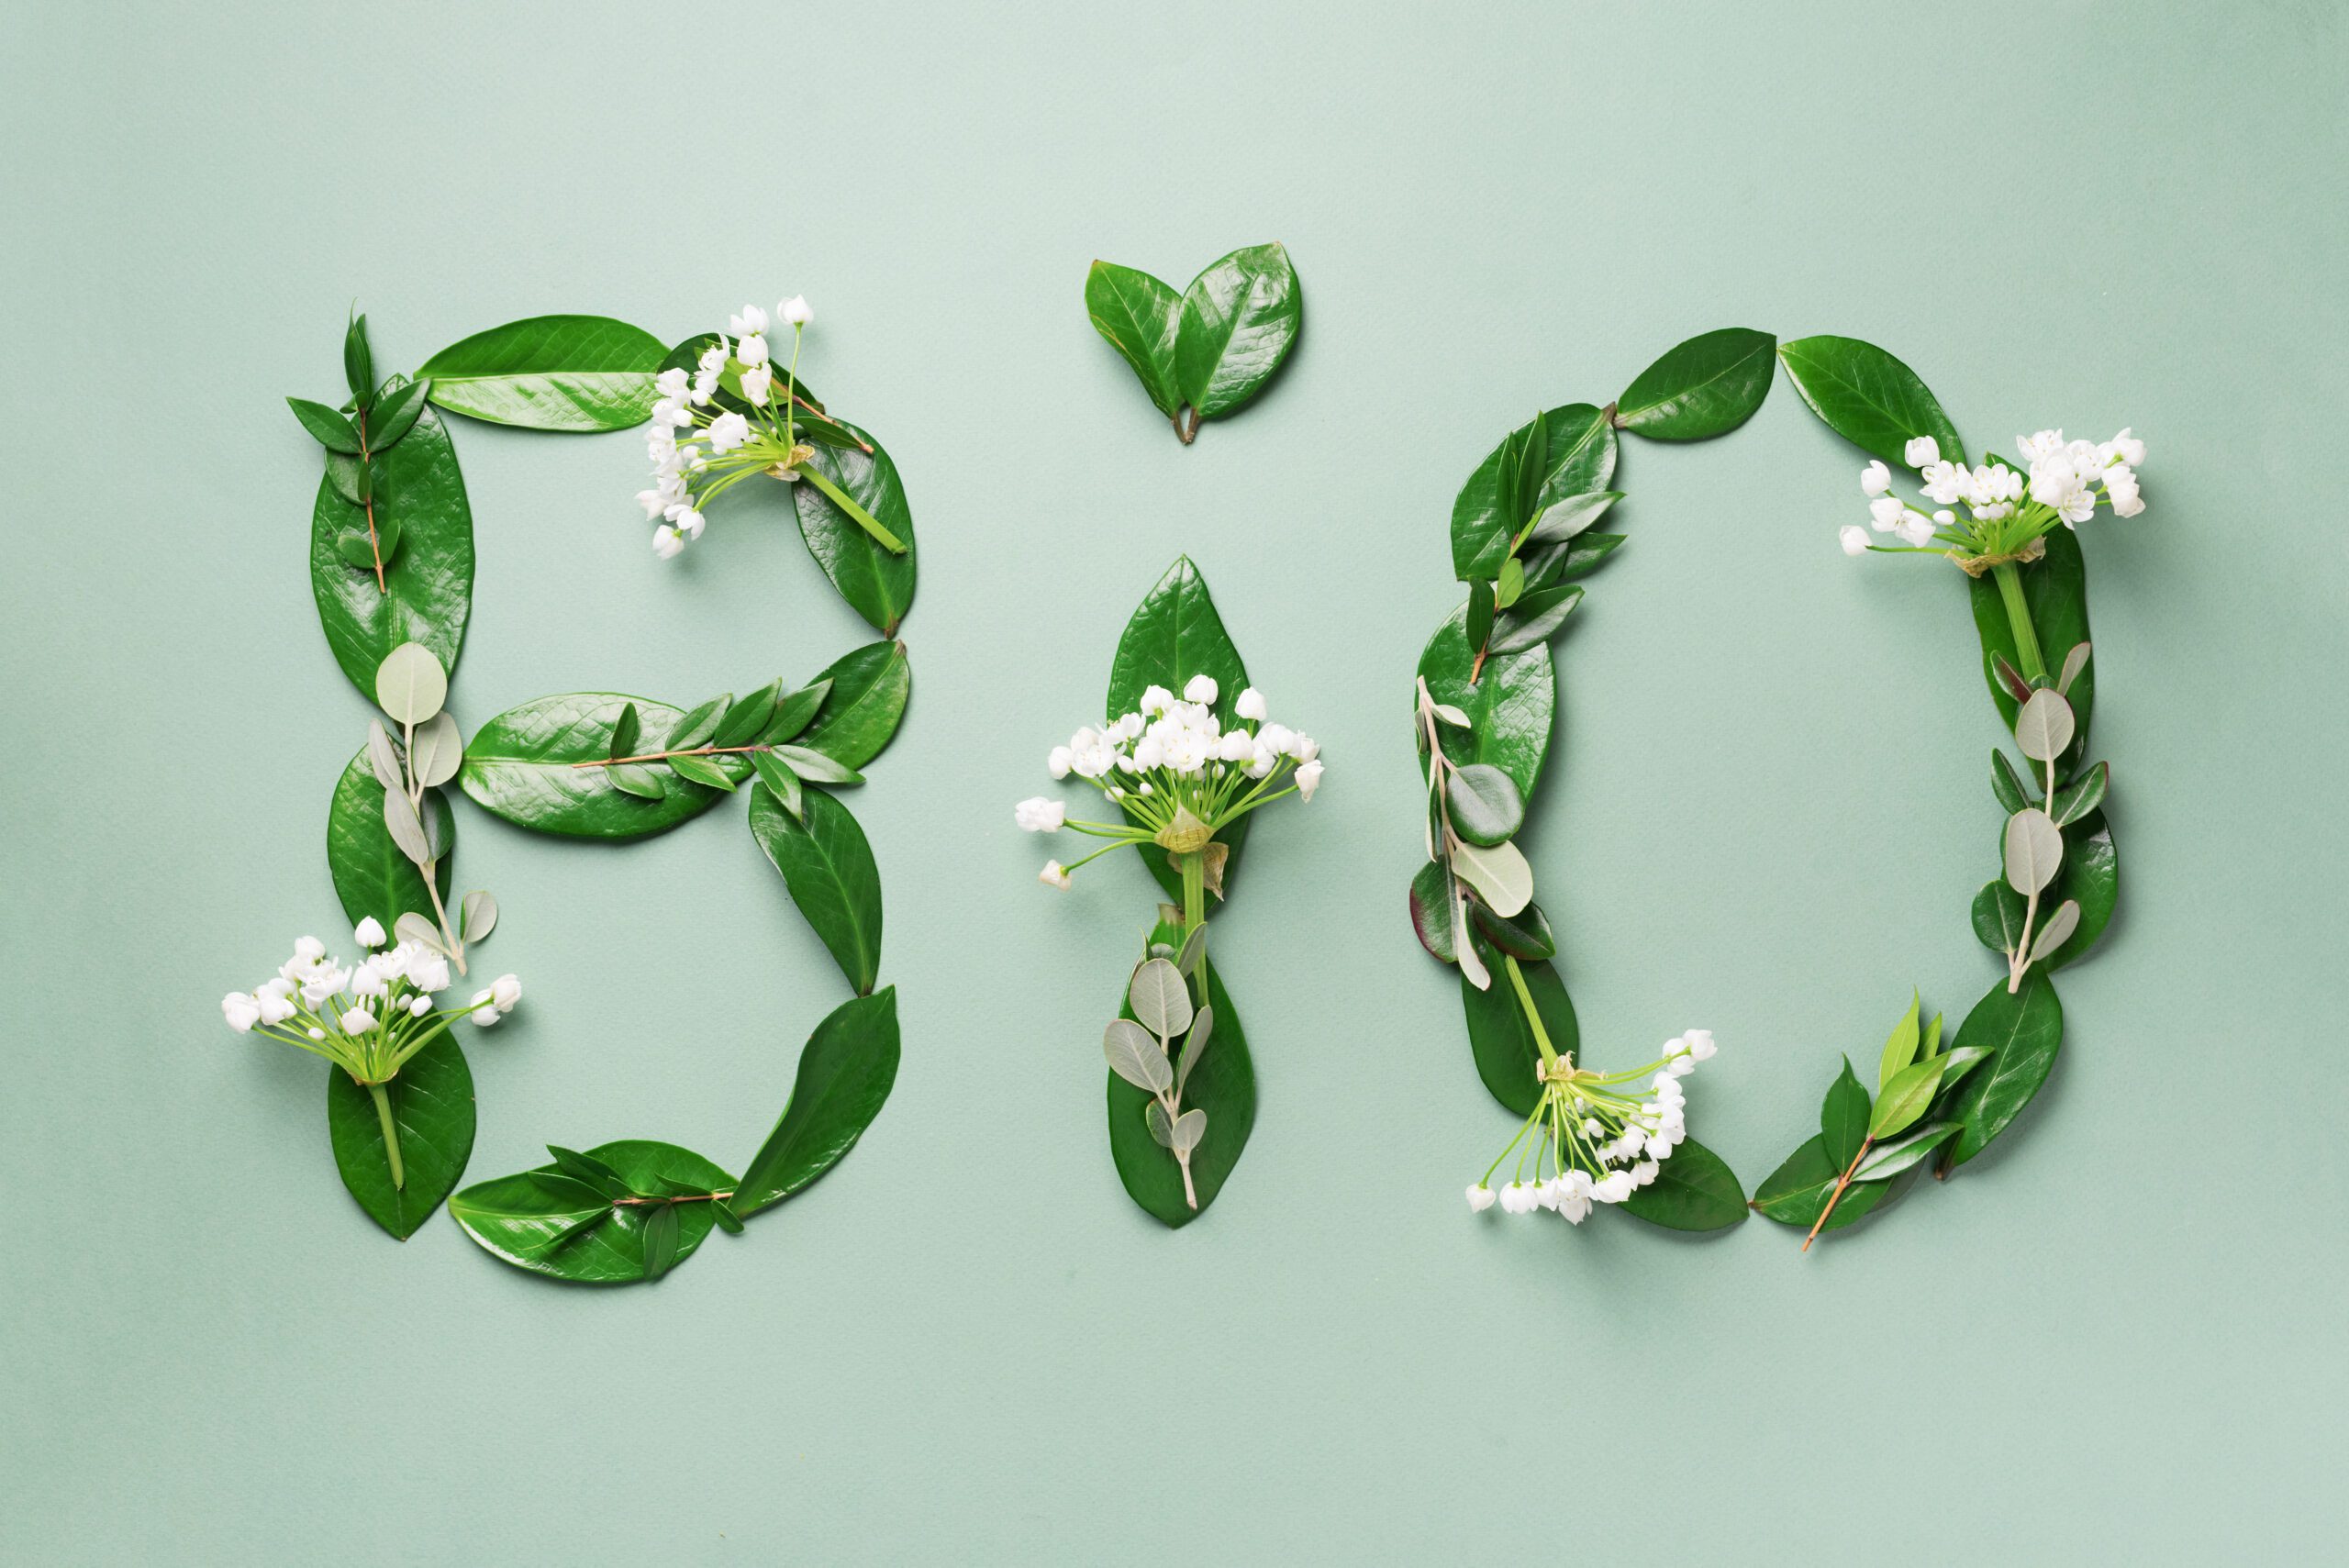 Scritta BIO con foglie e fiori - Ecopool Service